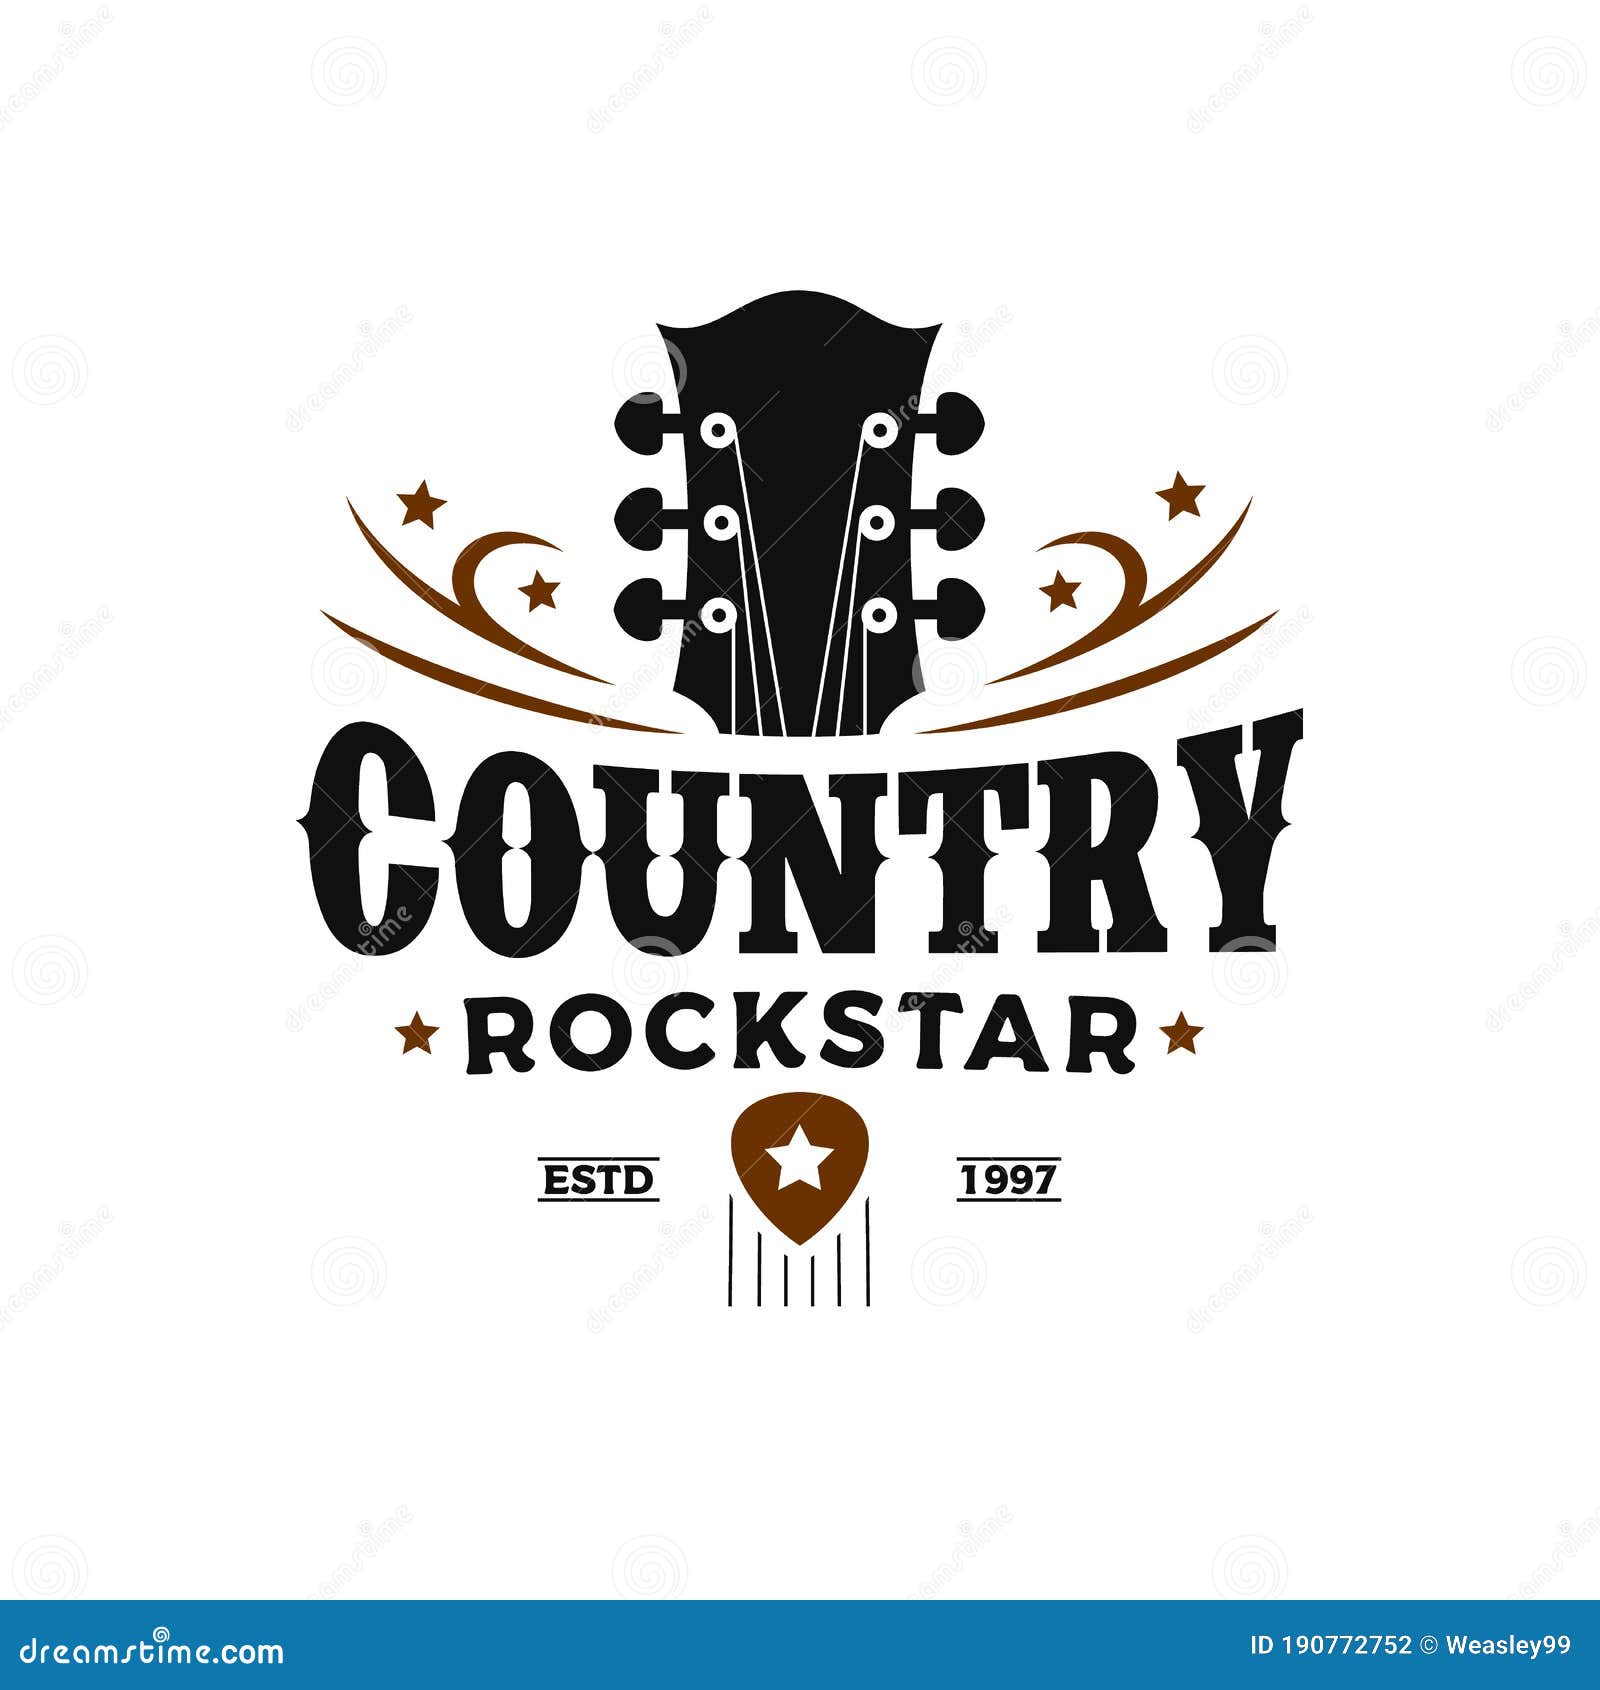 Premium Vector  Classic rock country guitar music vintage retro